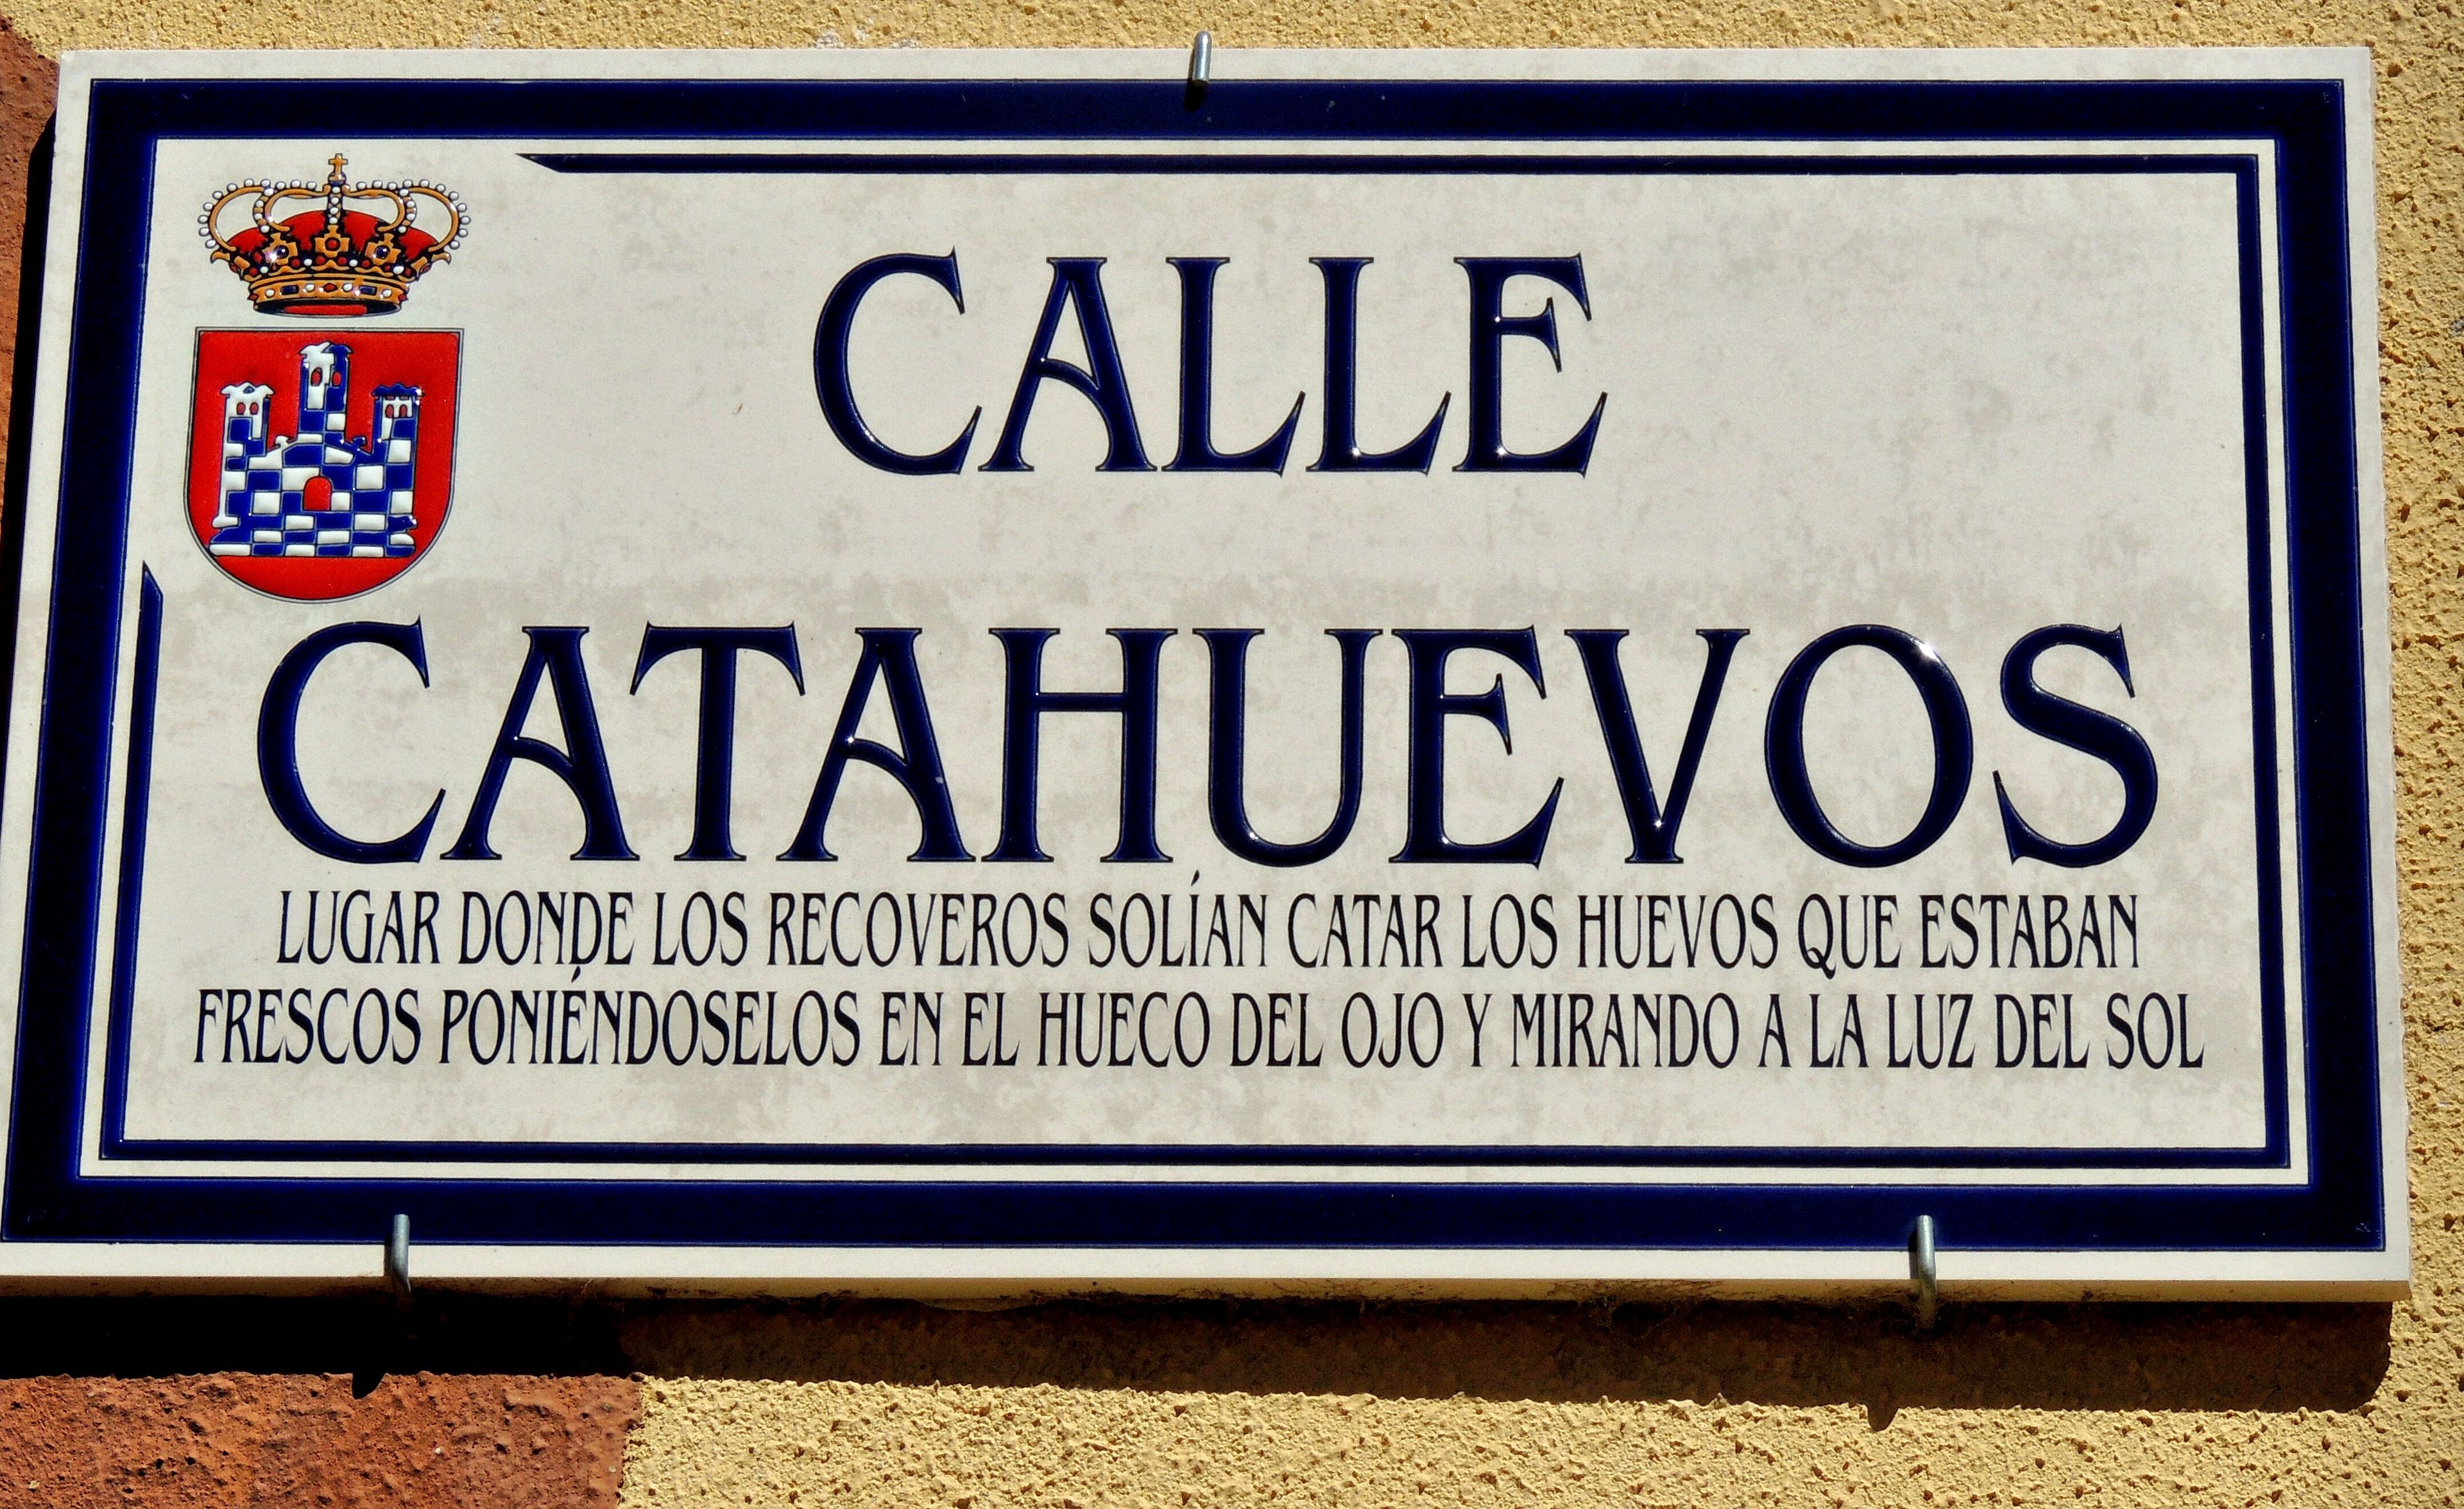 Calle Catahuevos.